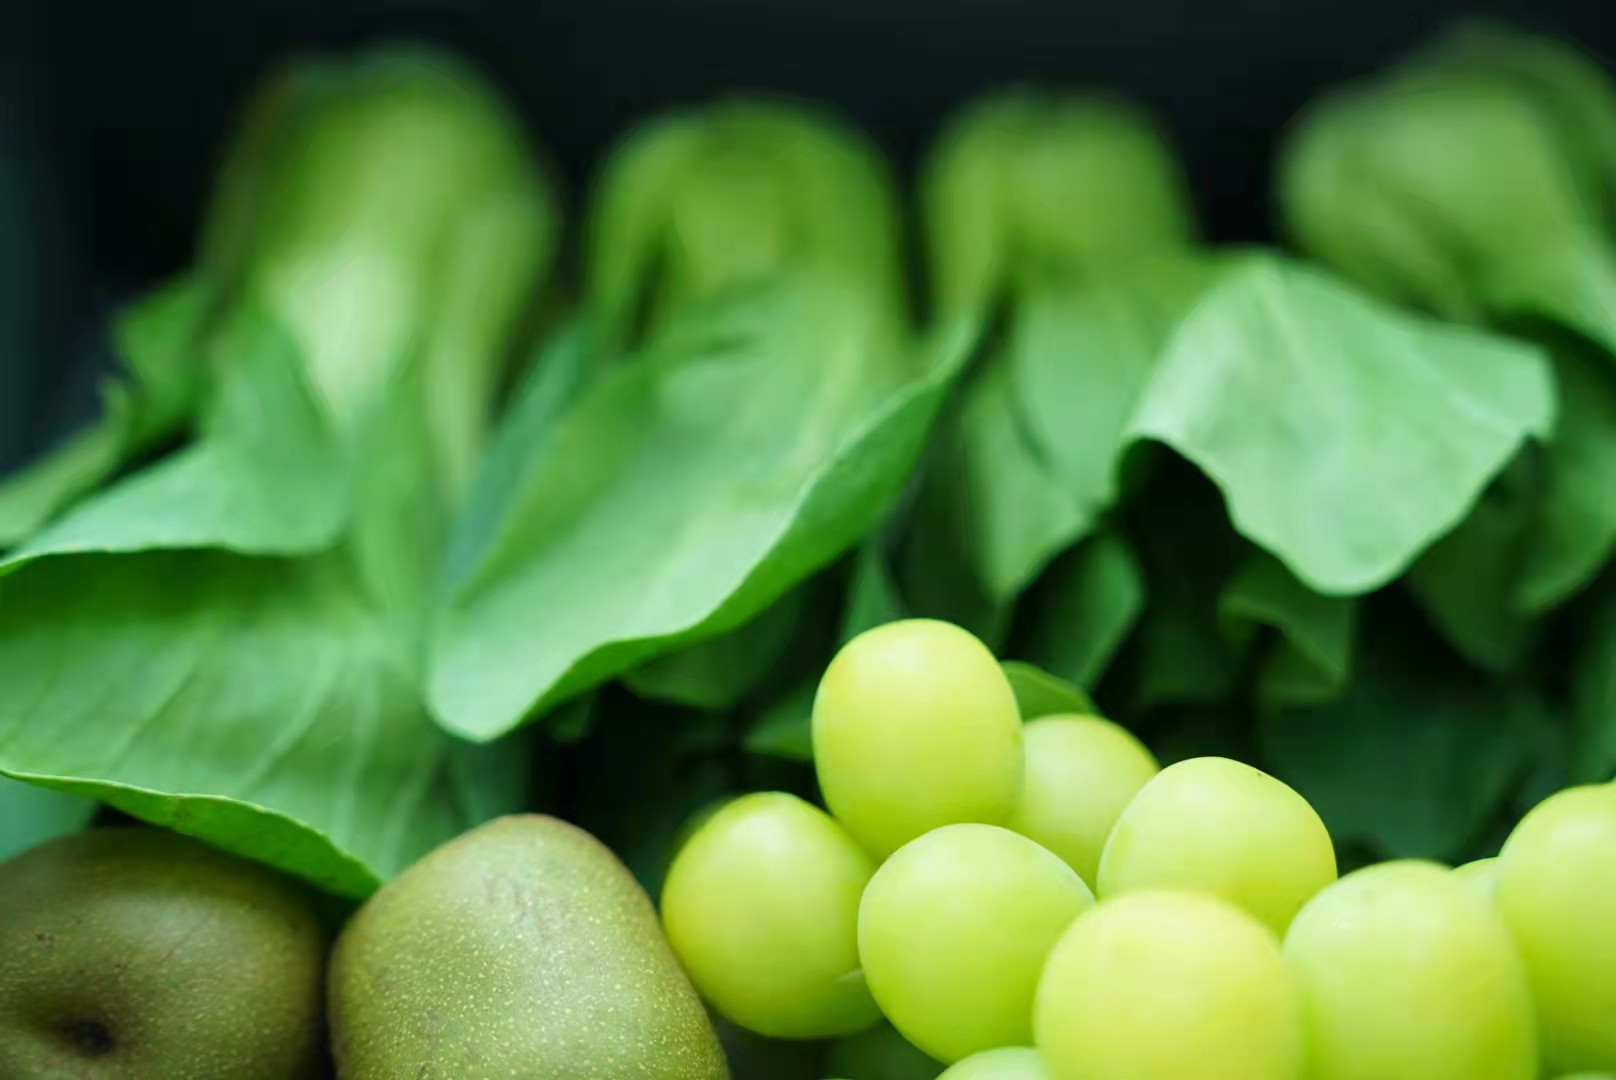 冰箱内部绿色果蔬长期冷藏后仍新鲜如初、本色不改